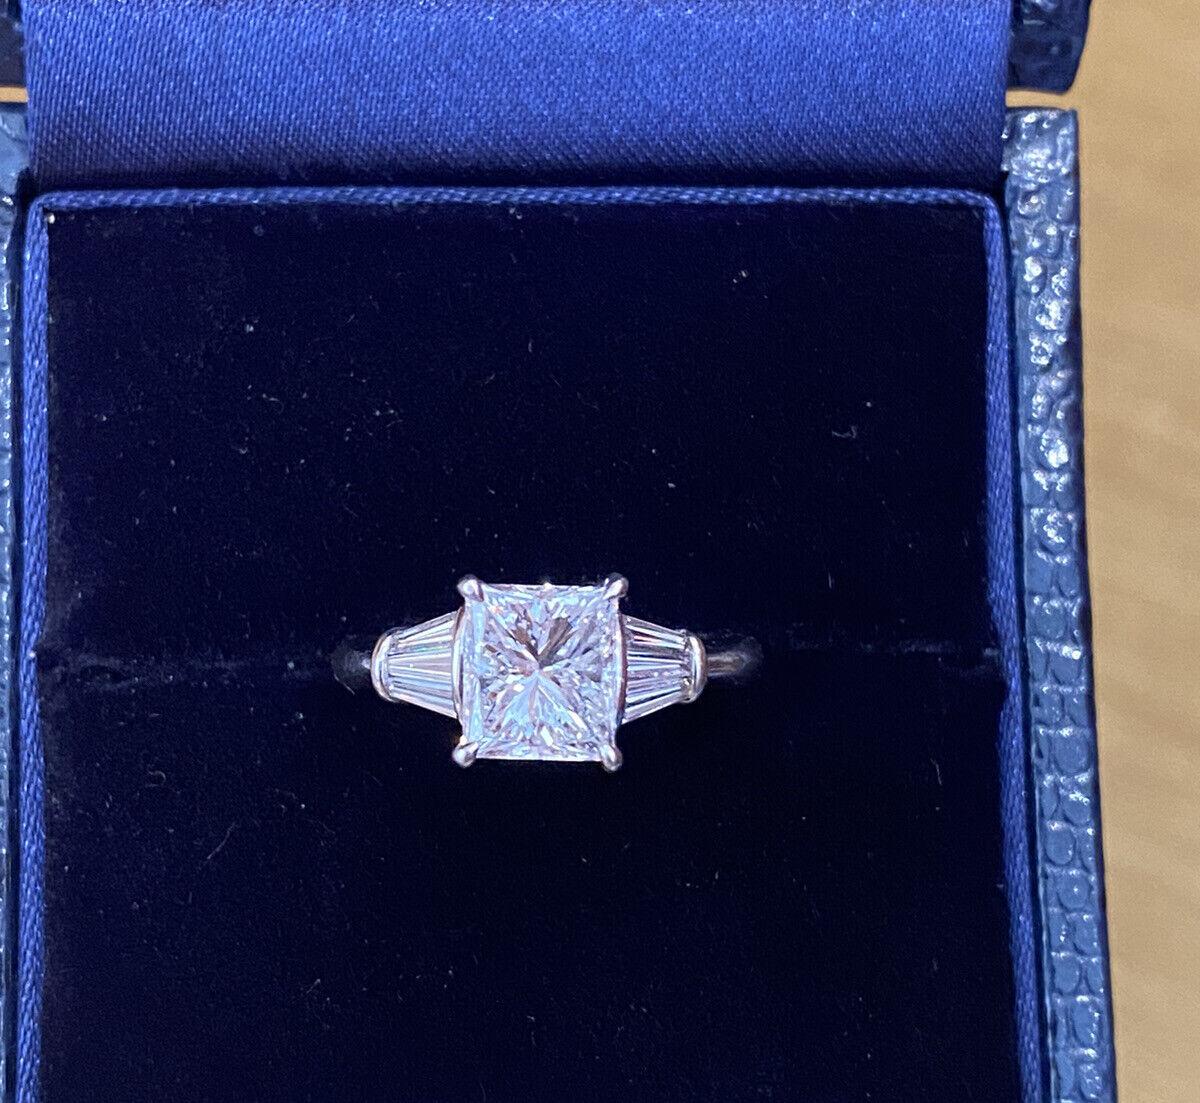 GIA-zertifizierter 2,02 Karat Diamantring in Platin mit Strahlenkranz

Der Ring Radiant Diamond with Baguettes besteht aus einem Diamanten im Radiant-Schliff in der Mitte, der von 6 spitz zulaufenden Baguettes an der Seite akzentuiert wird, die in